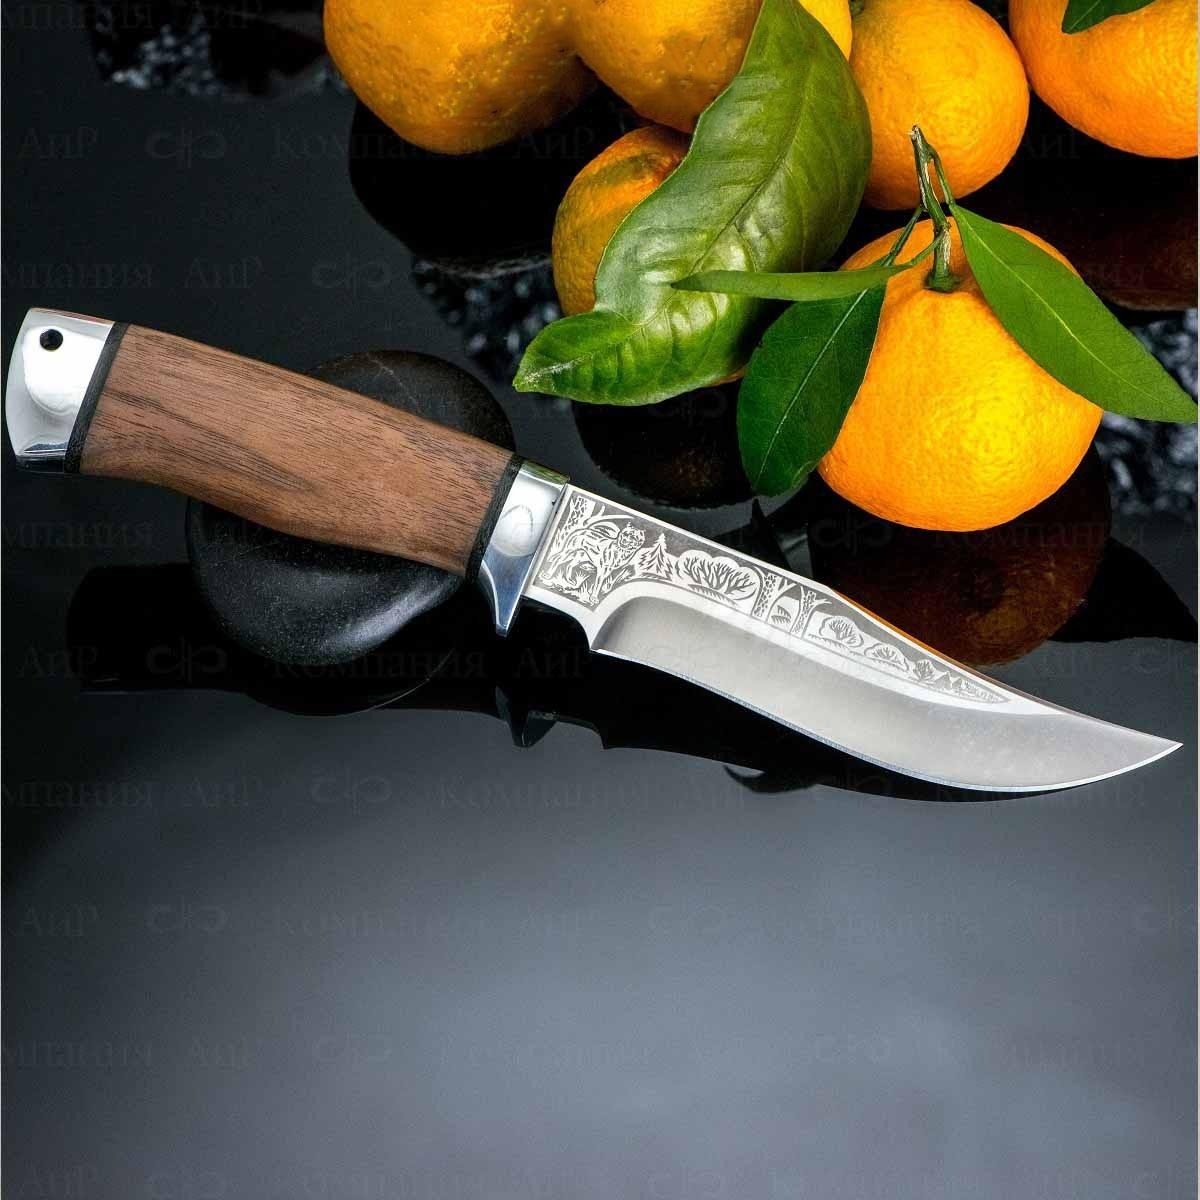 Нож АиР Клычок-1, сталь 110х18 М-ШД, рукоять дерево